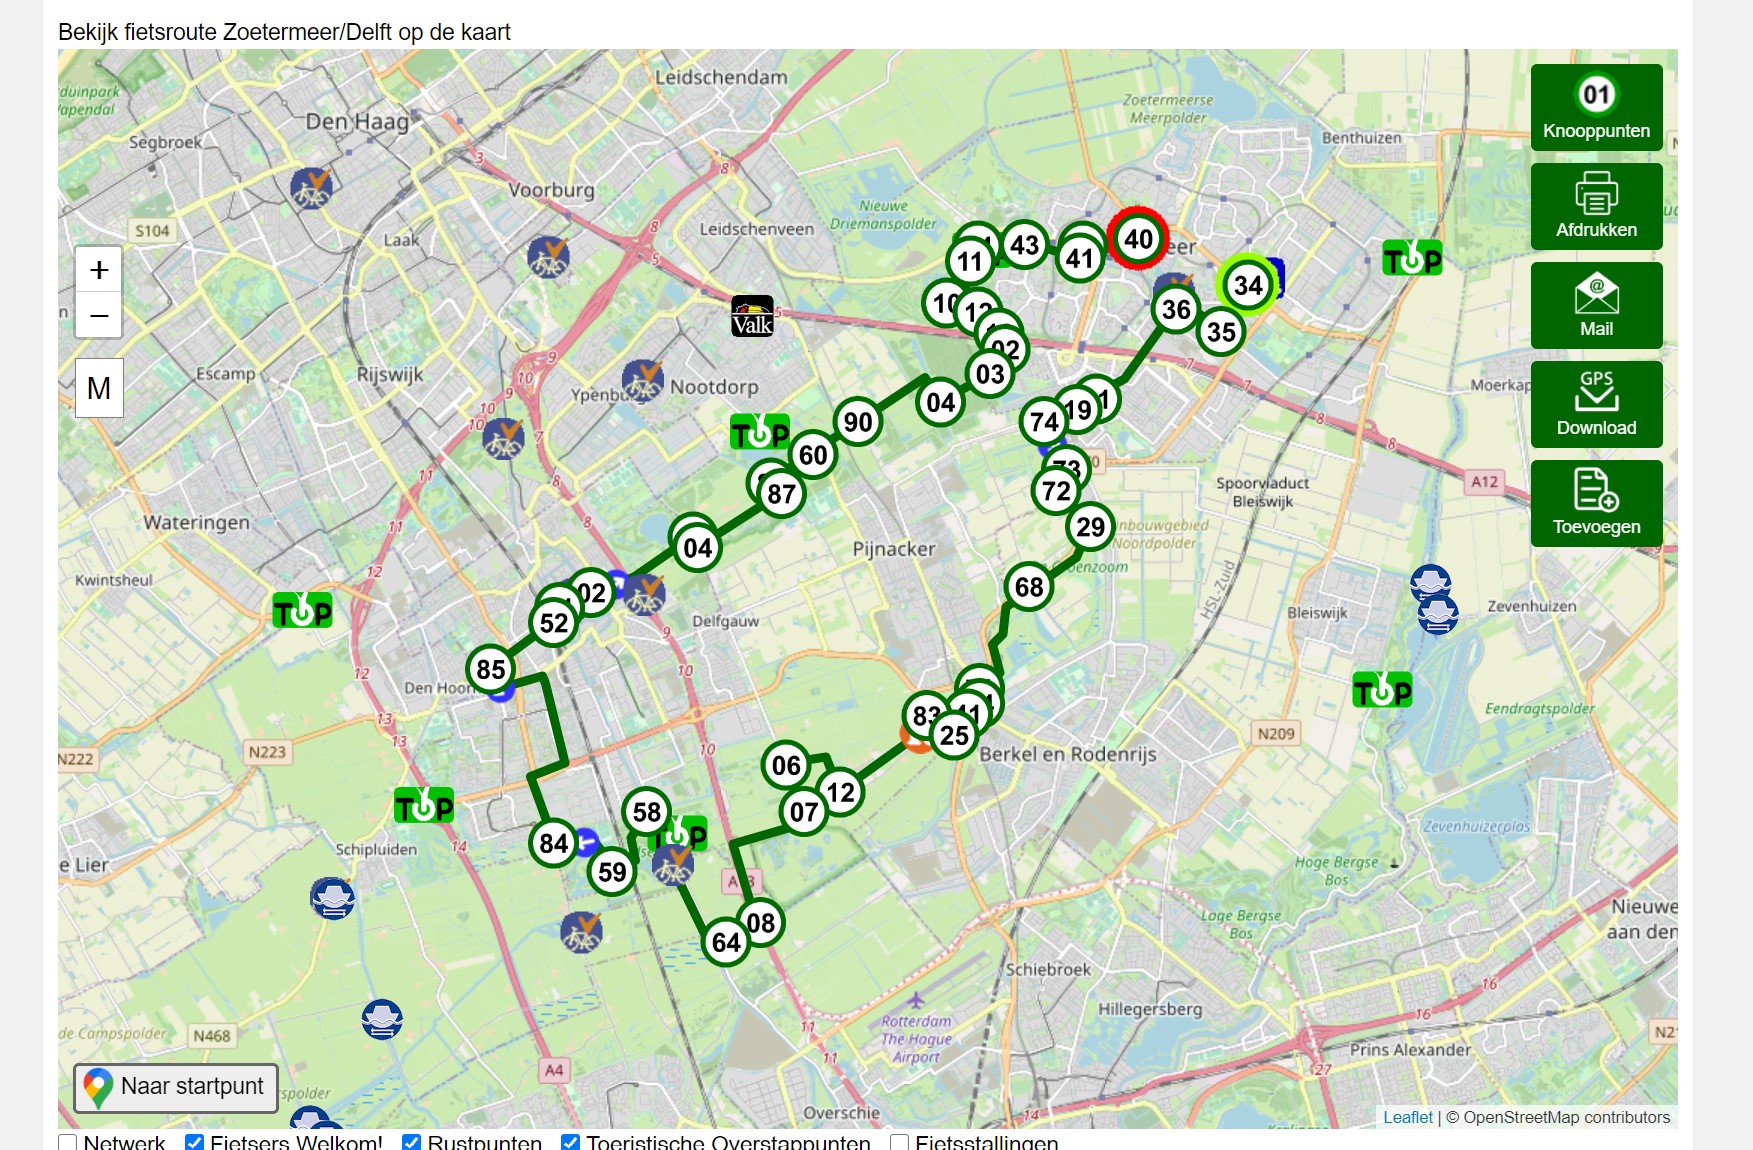 Route Delft